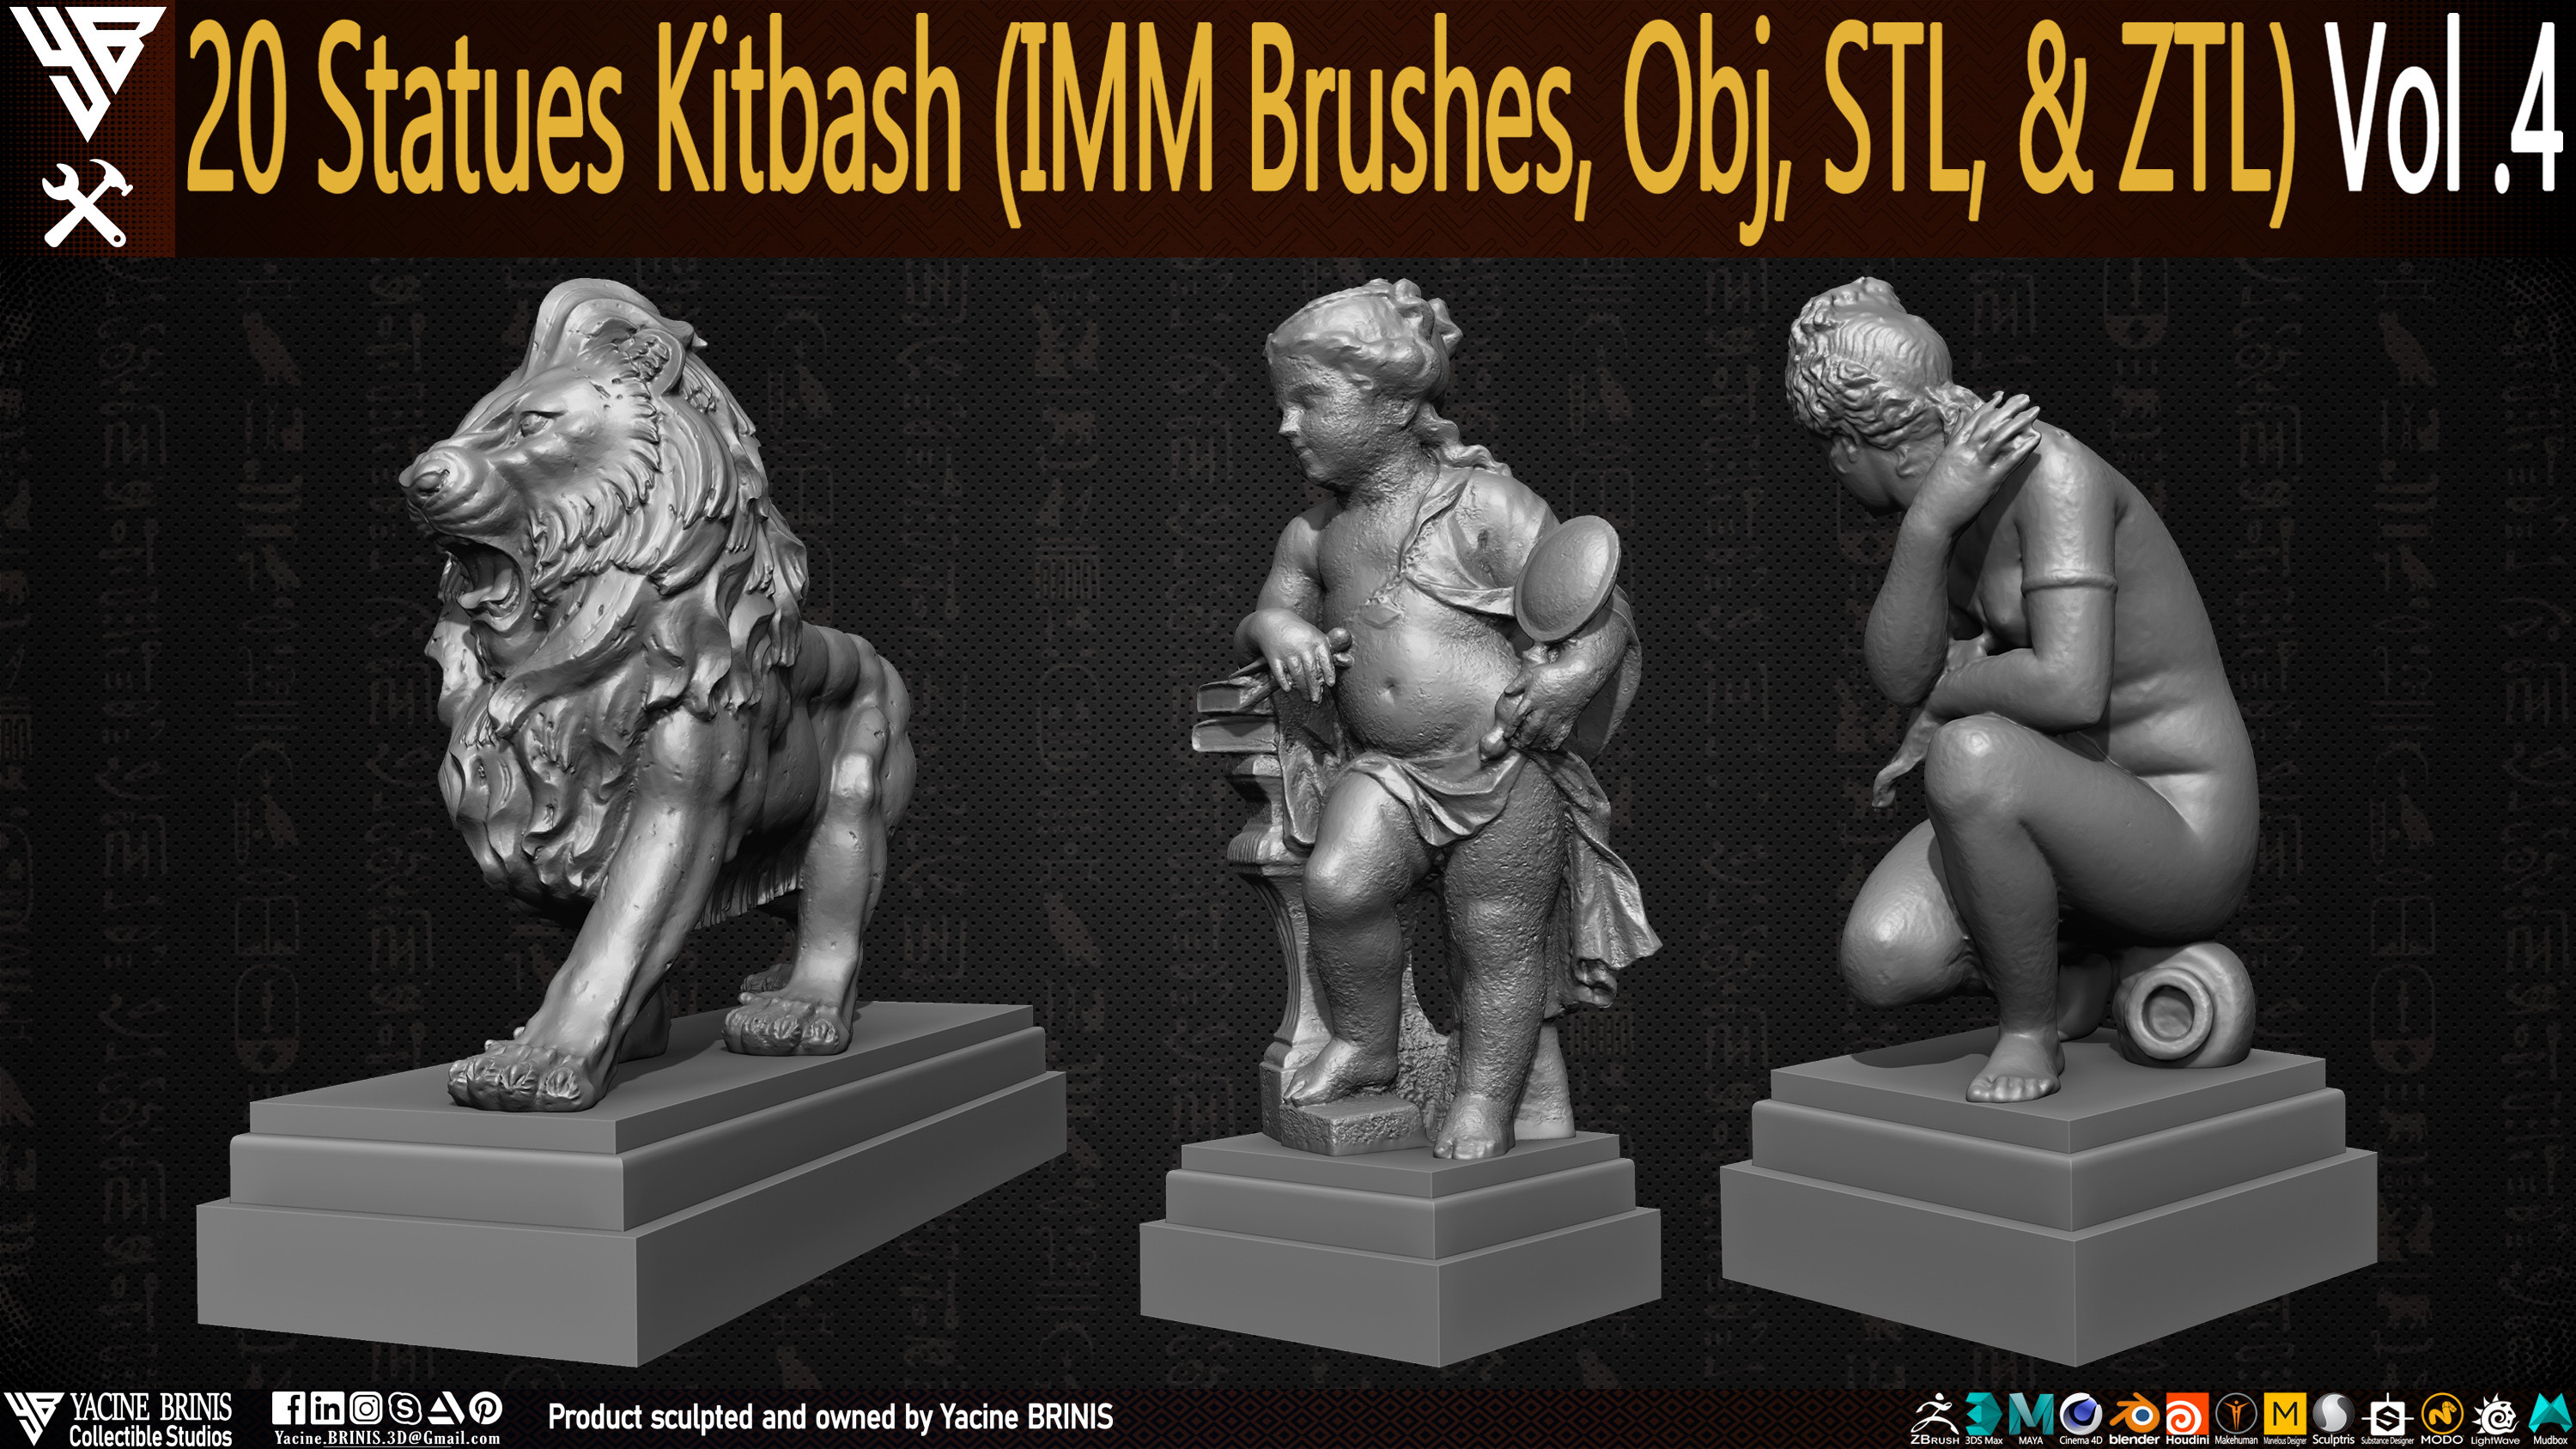 Statues Kitbash by yacine brinis Set 19